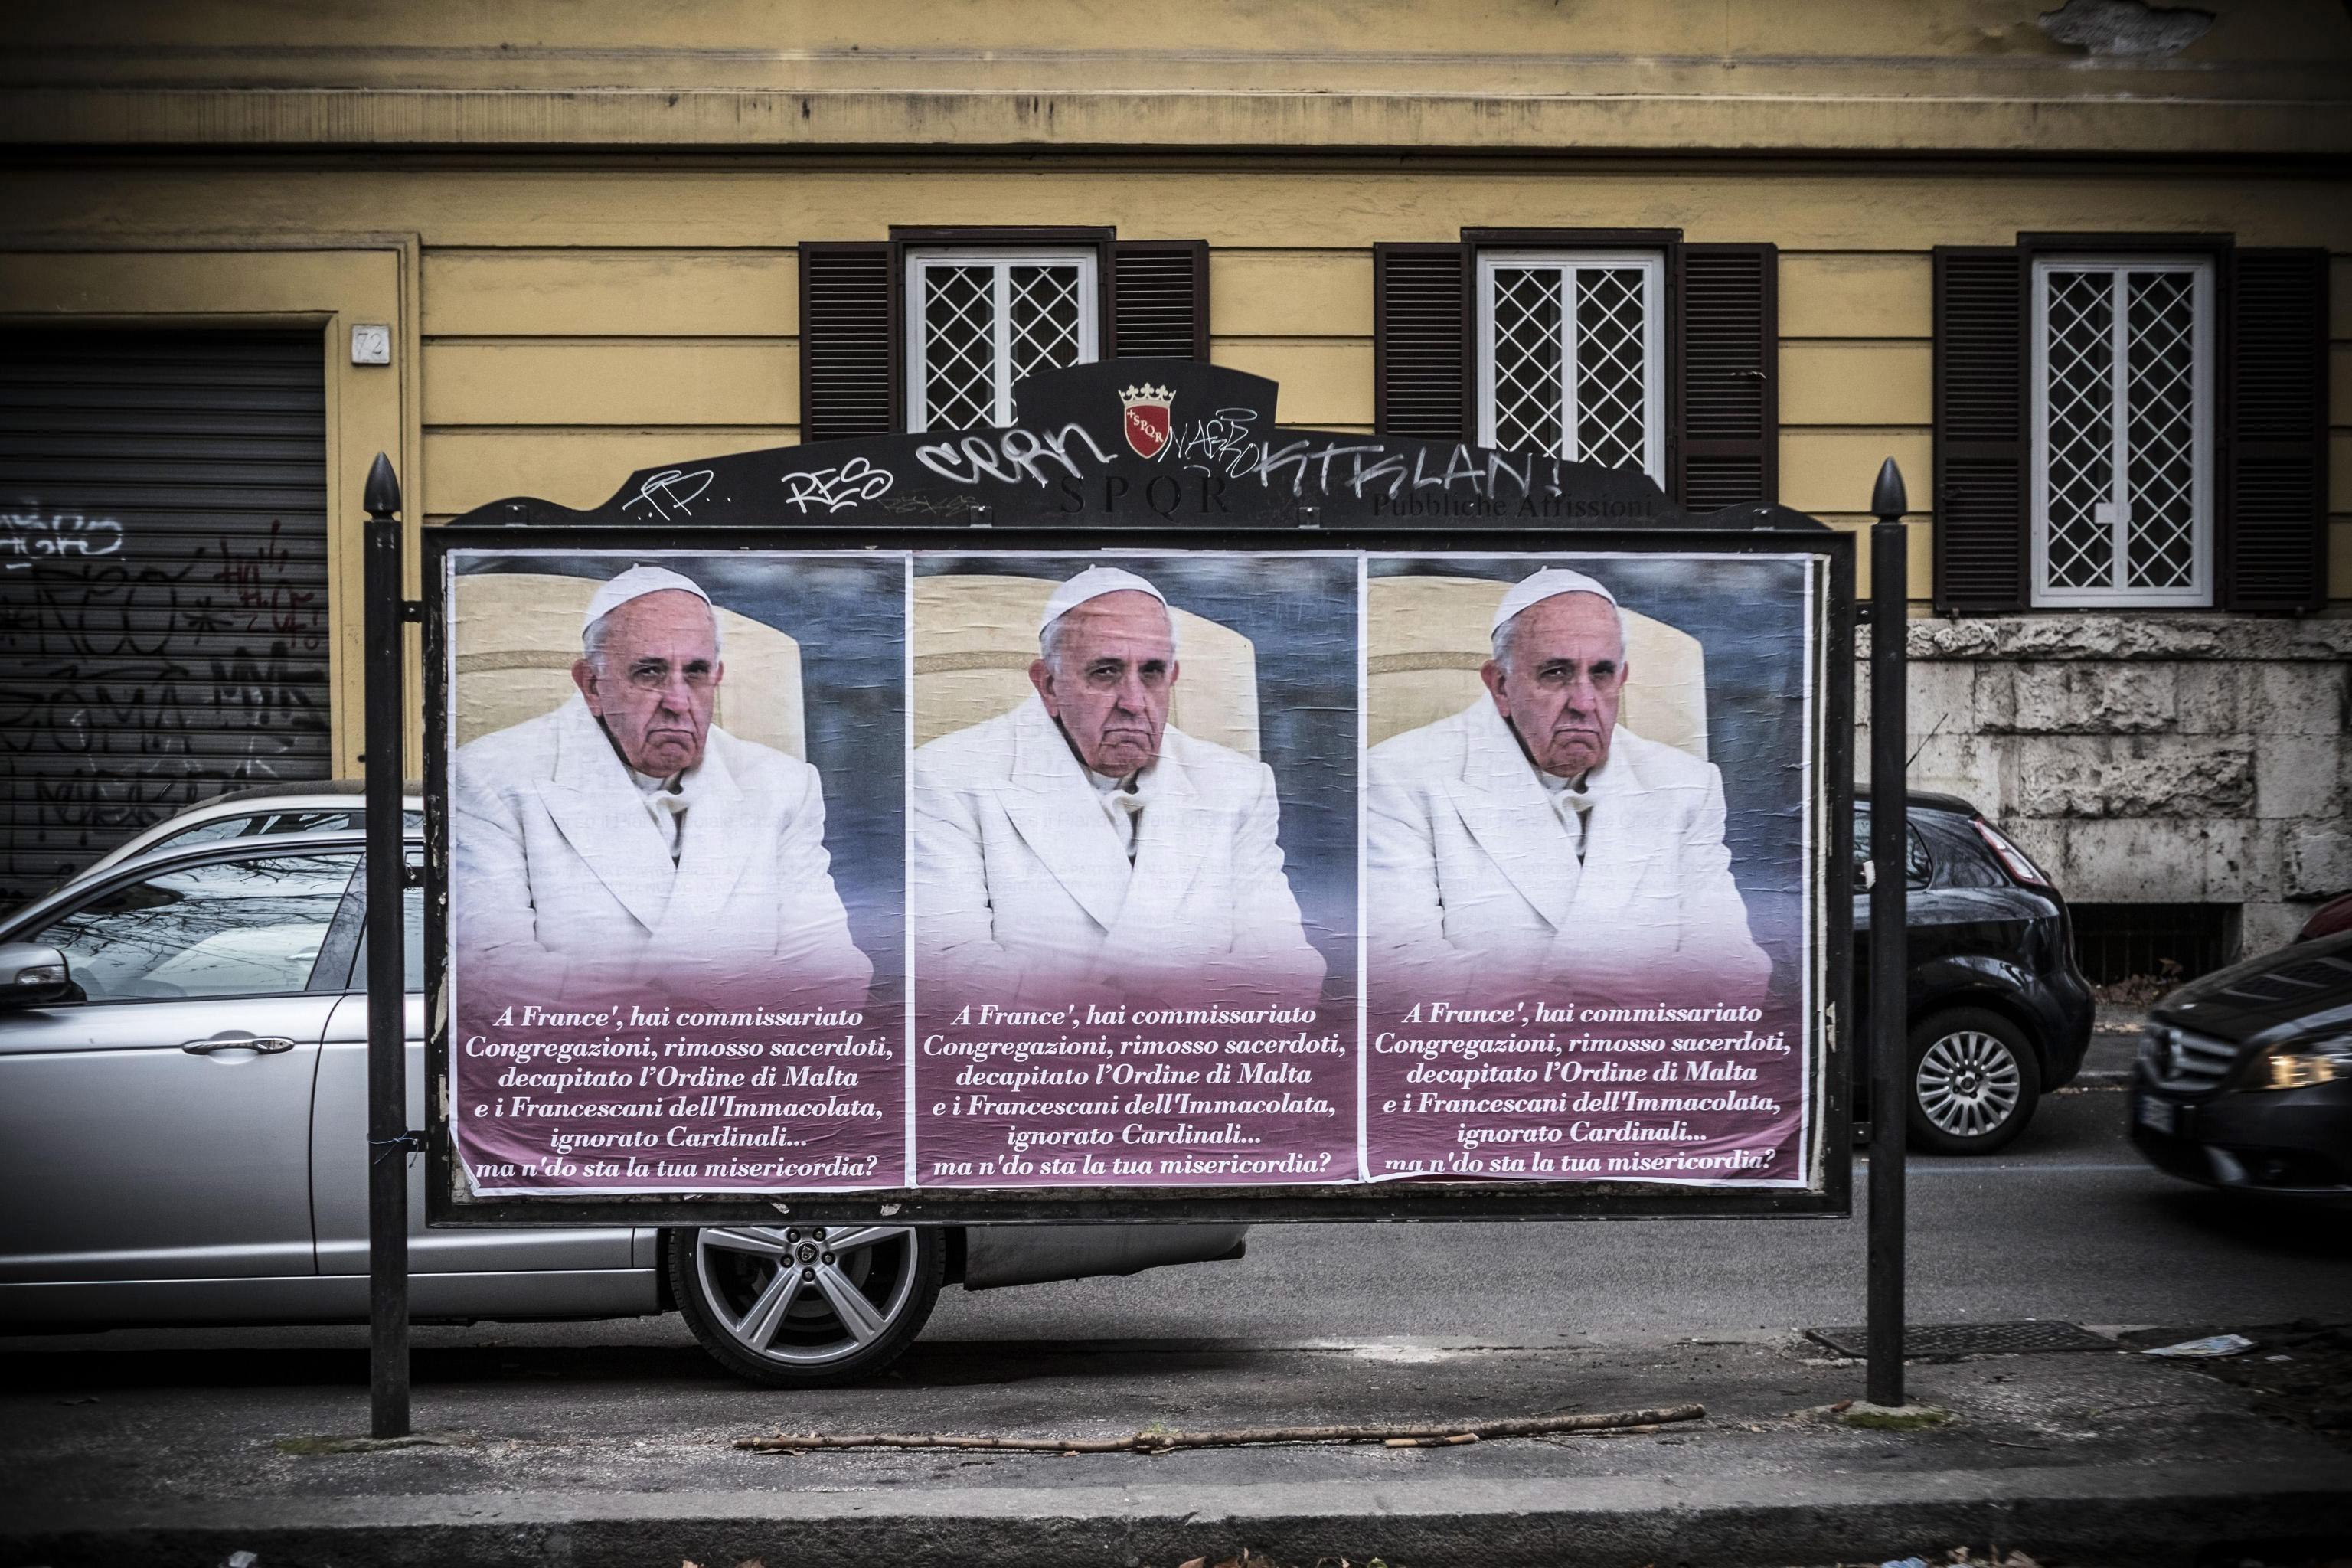  Afiches anónimos contra el Papa en Roma